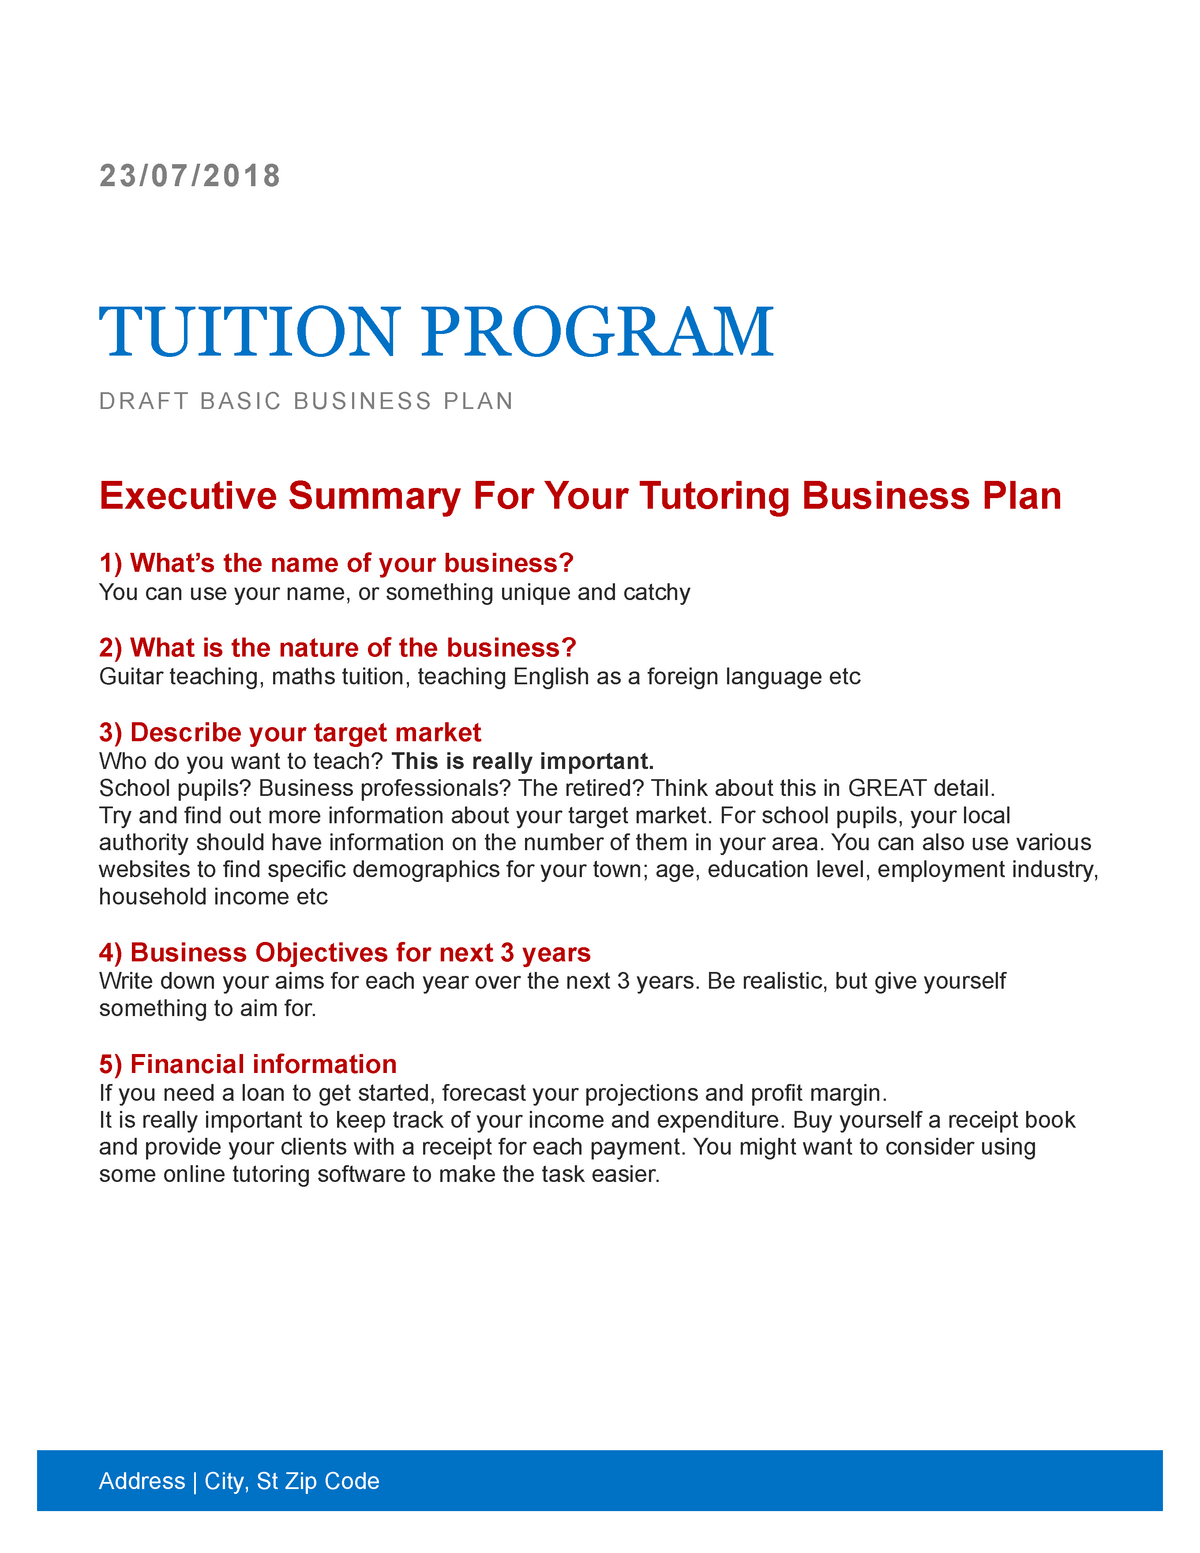 tutoring service business plan pdf